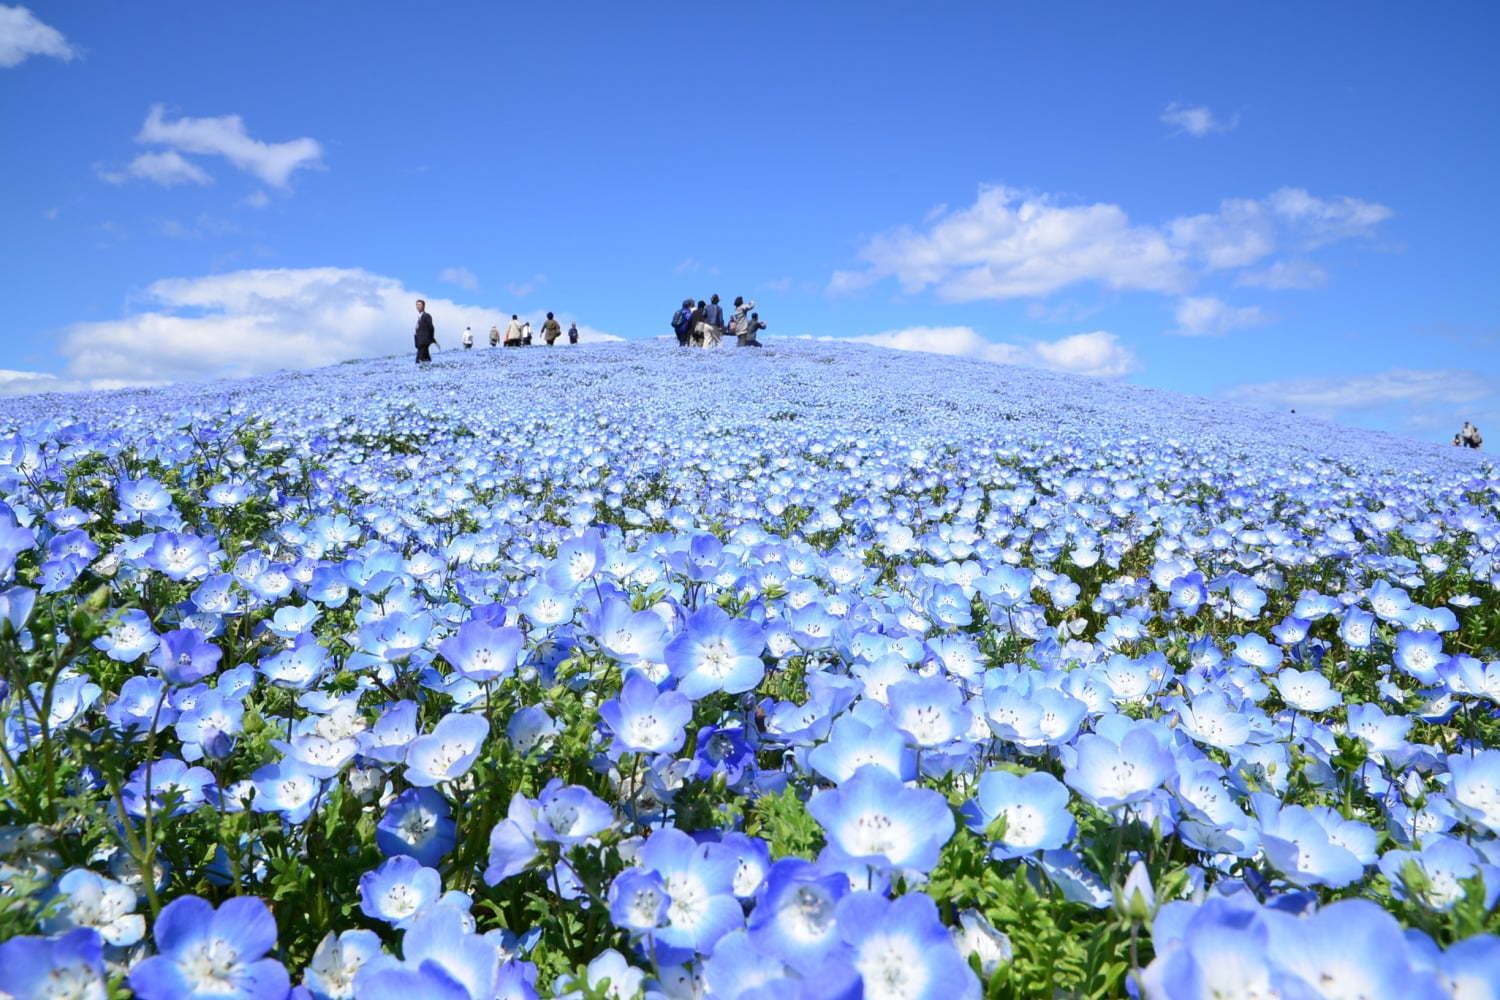 茨城 国営ひたち海浜公園 春の絶景 ネモフィラ 約530万本の 青い絨毯 が一面に ファッションプレス